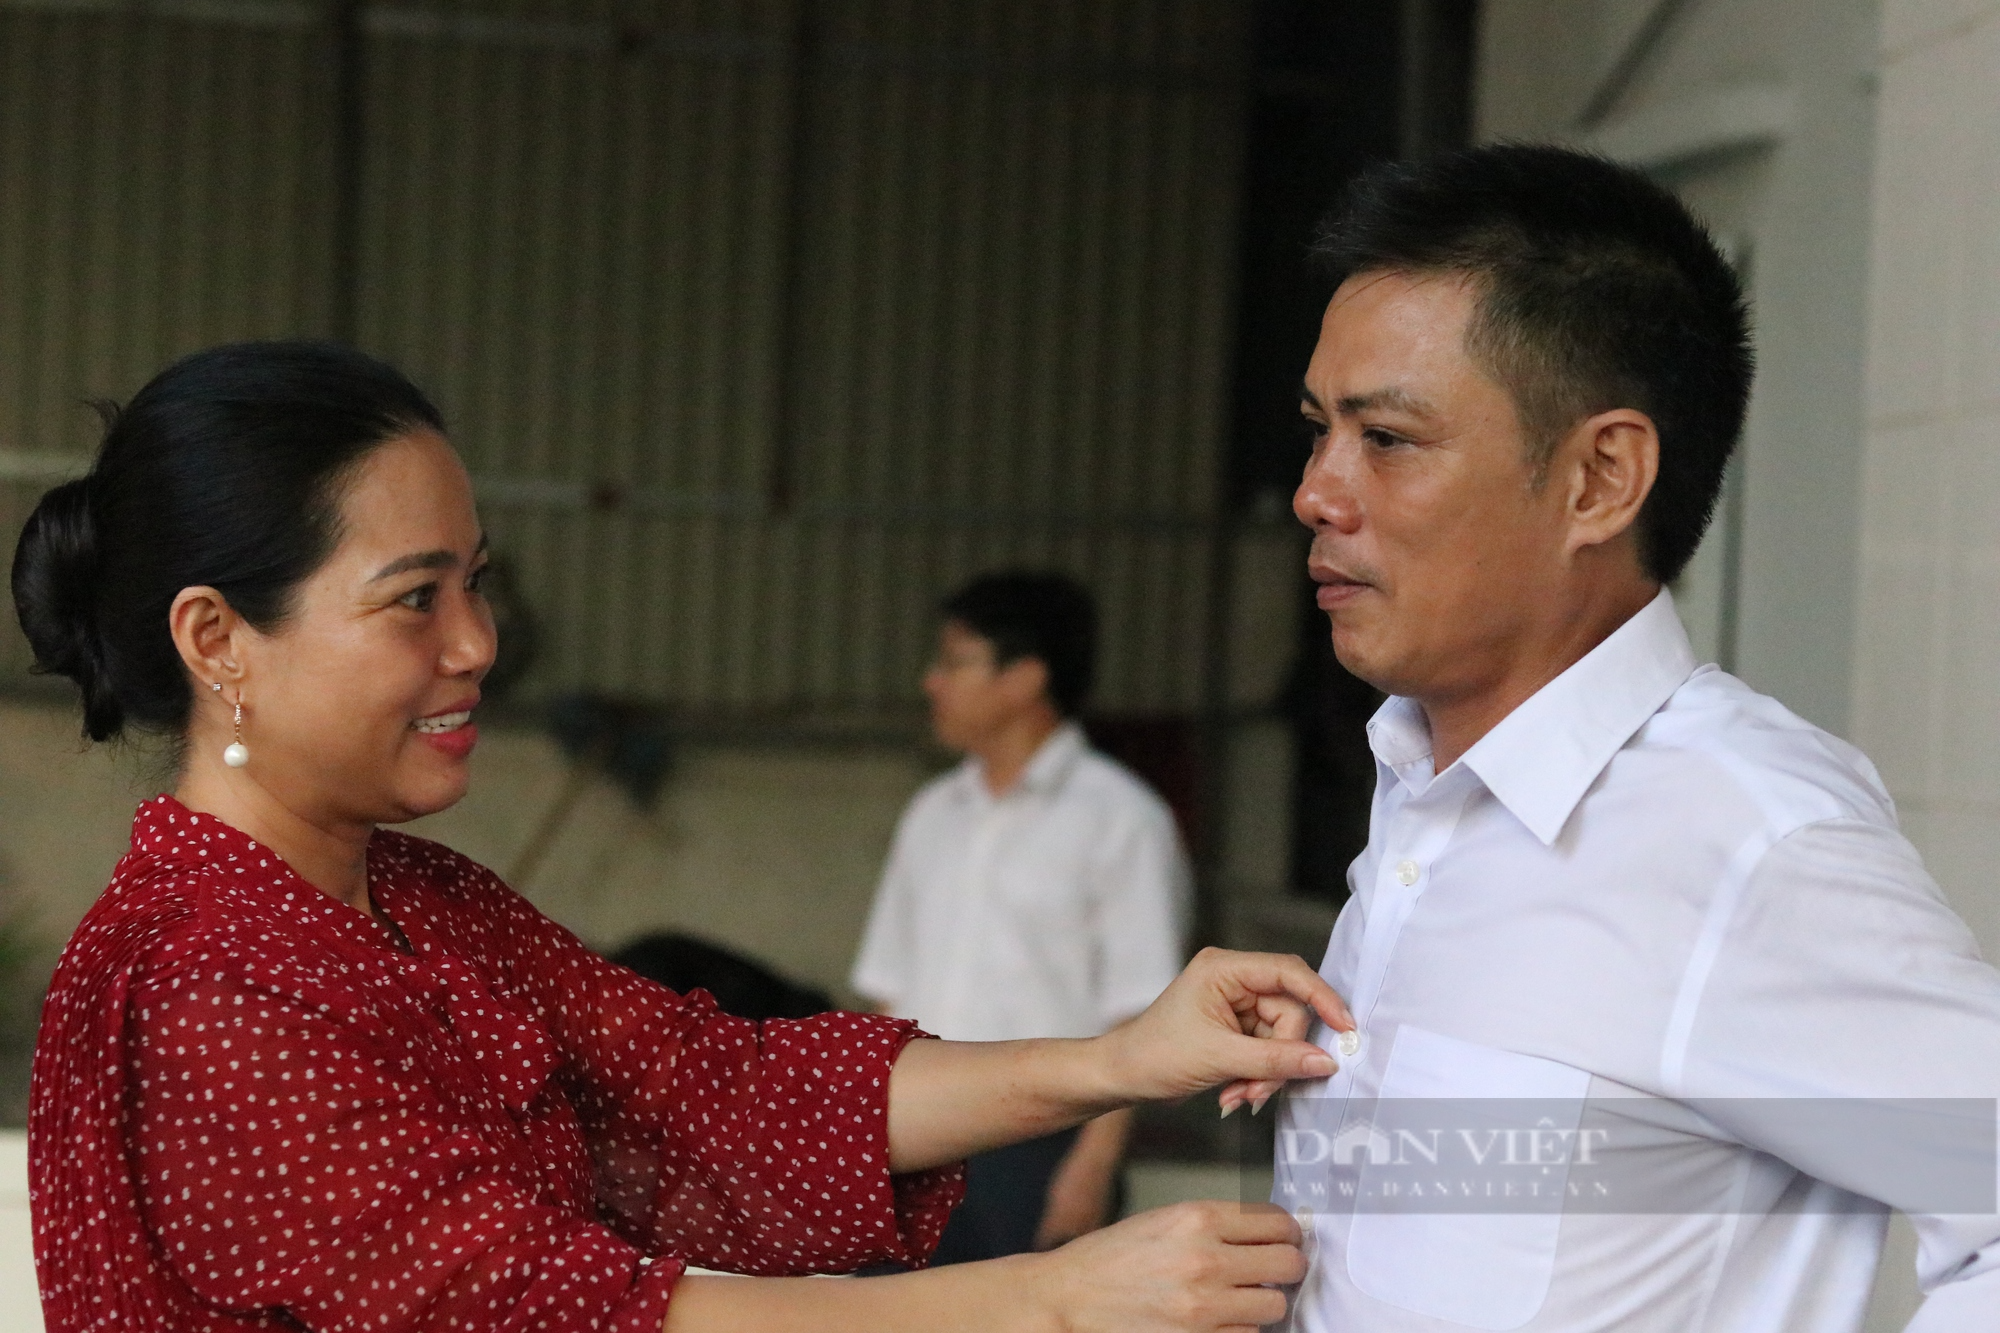 Hà Tĩnh: Trưởng thôn 46 tuổi quyết tâm dự thi THPT quốc gia để giúp đỡ bà con trong thôn phát triển kinh tế - Ảnh 5.